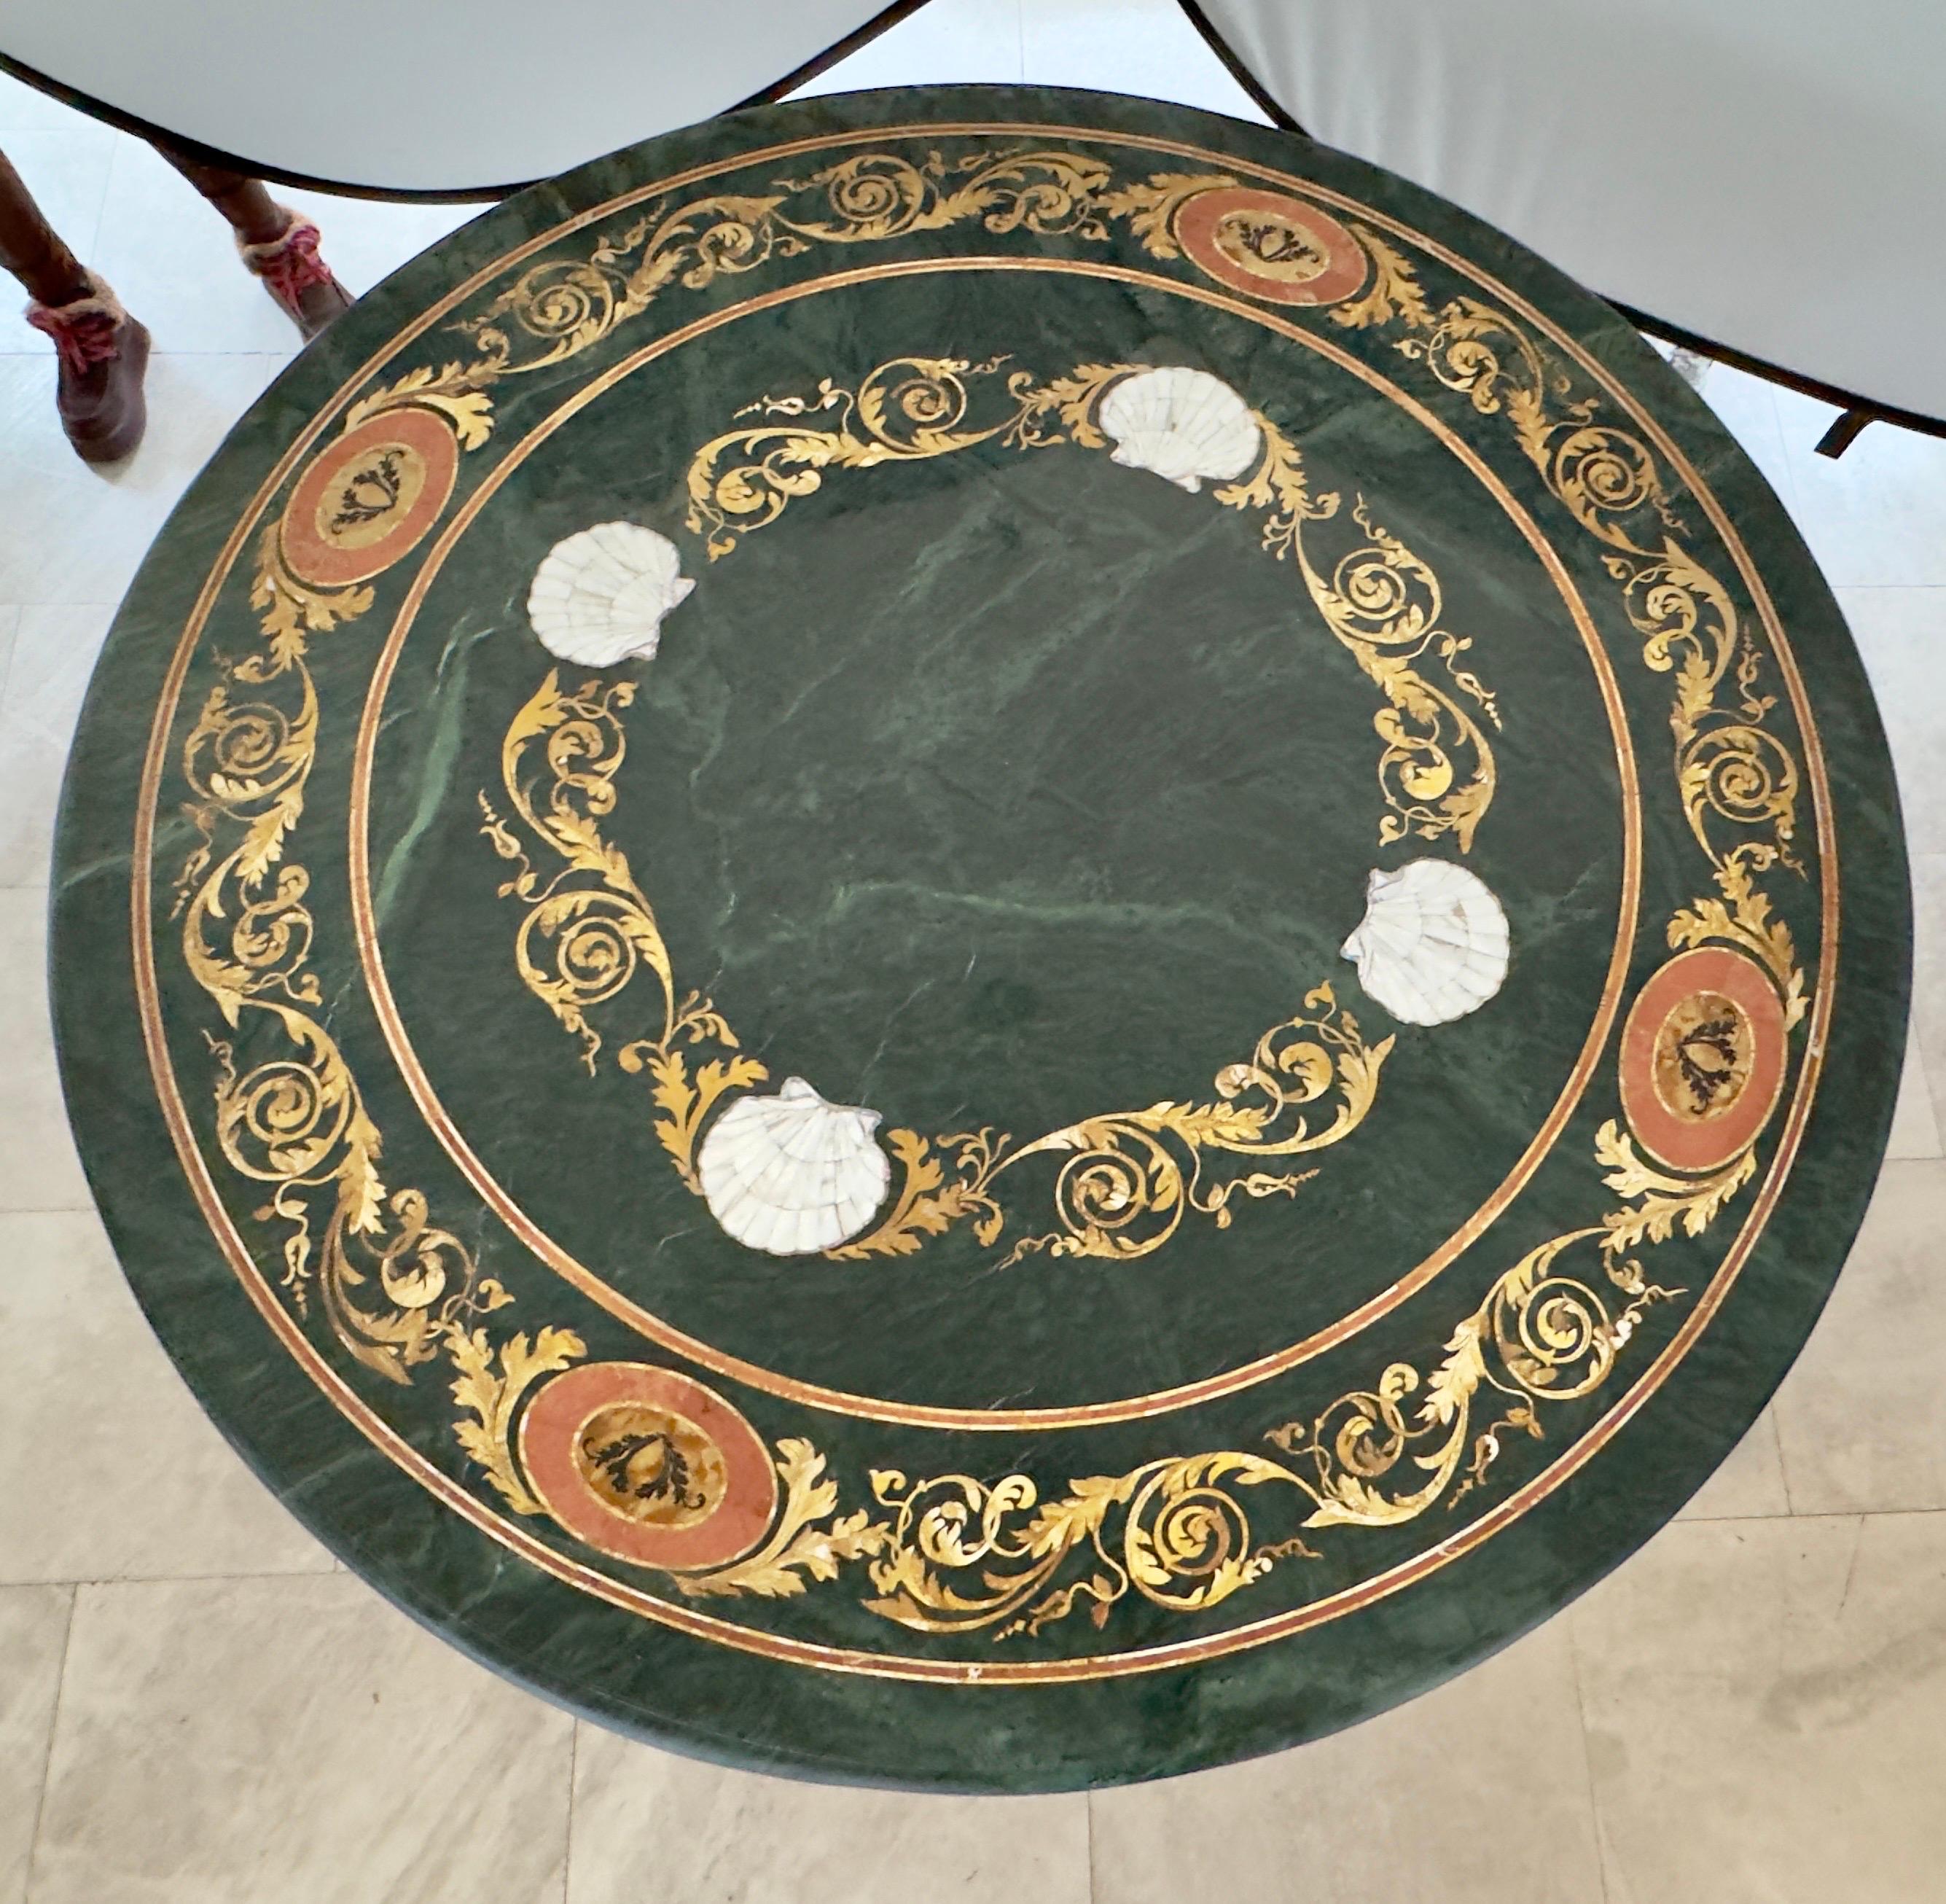 Ein prächtiger Pietra Dura-Sockel-Mitteltisch, der in üppigem grünen Marmor erstrahlt. Dieses opulente Stück besticht durch ein kompliziertes florales Mosaik aus Perlmuttmuscheln, das zart mit den anmutigen Motiven von Schriftrollen und